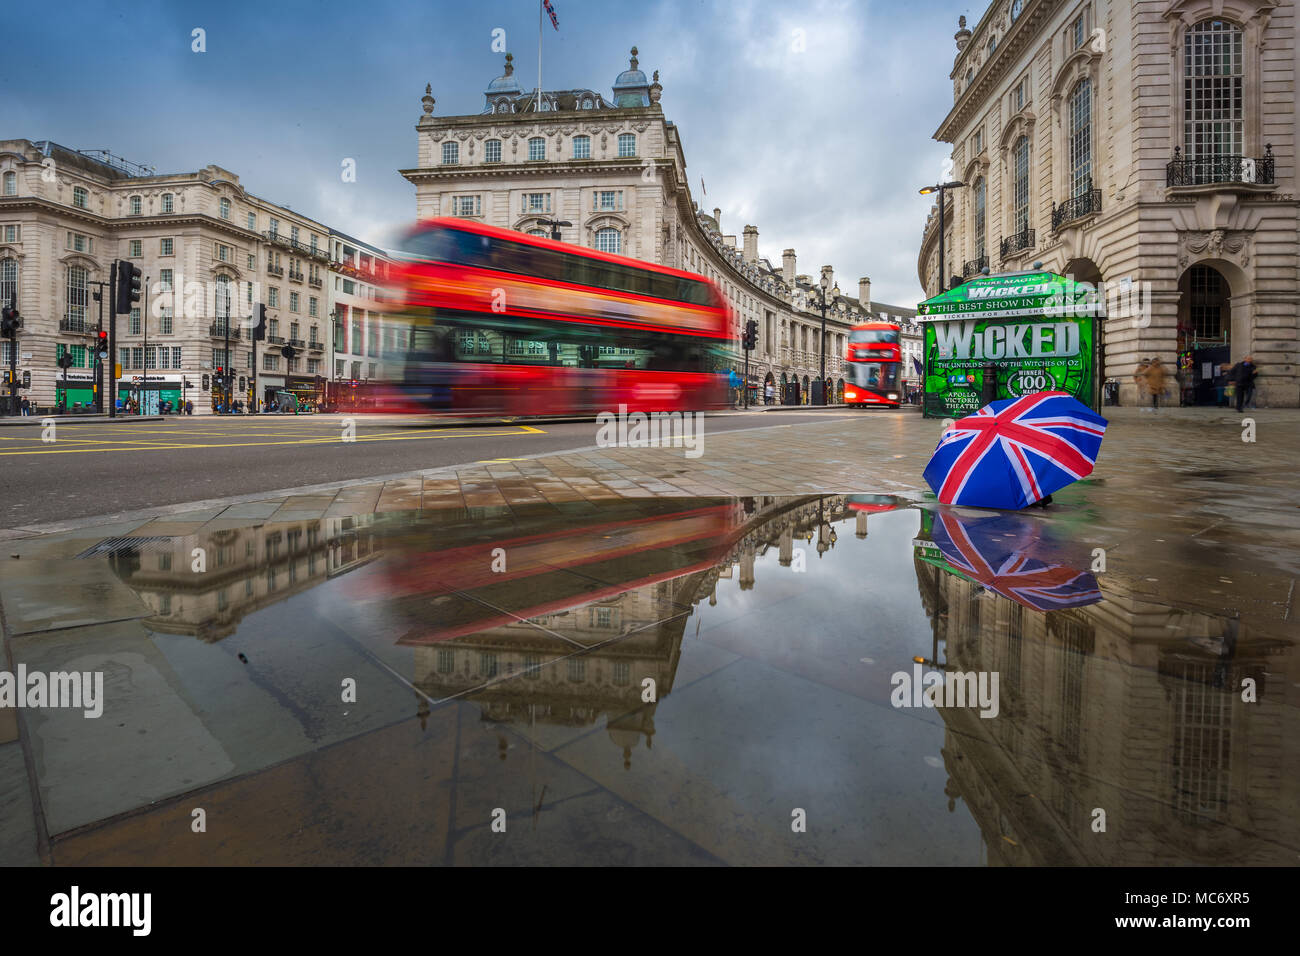 Londres, Inglaterra - 03.15.2018: reflexión de autobuses de dos pisos de  color rojo sobre el movimiento en Piccadilly Circus con british paraguas.  Piccadilly Circus es el m Fotografía de stock - Alamy